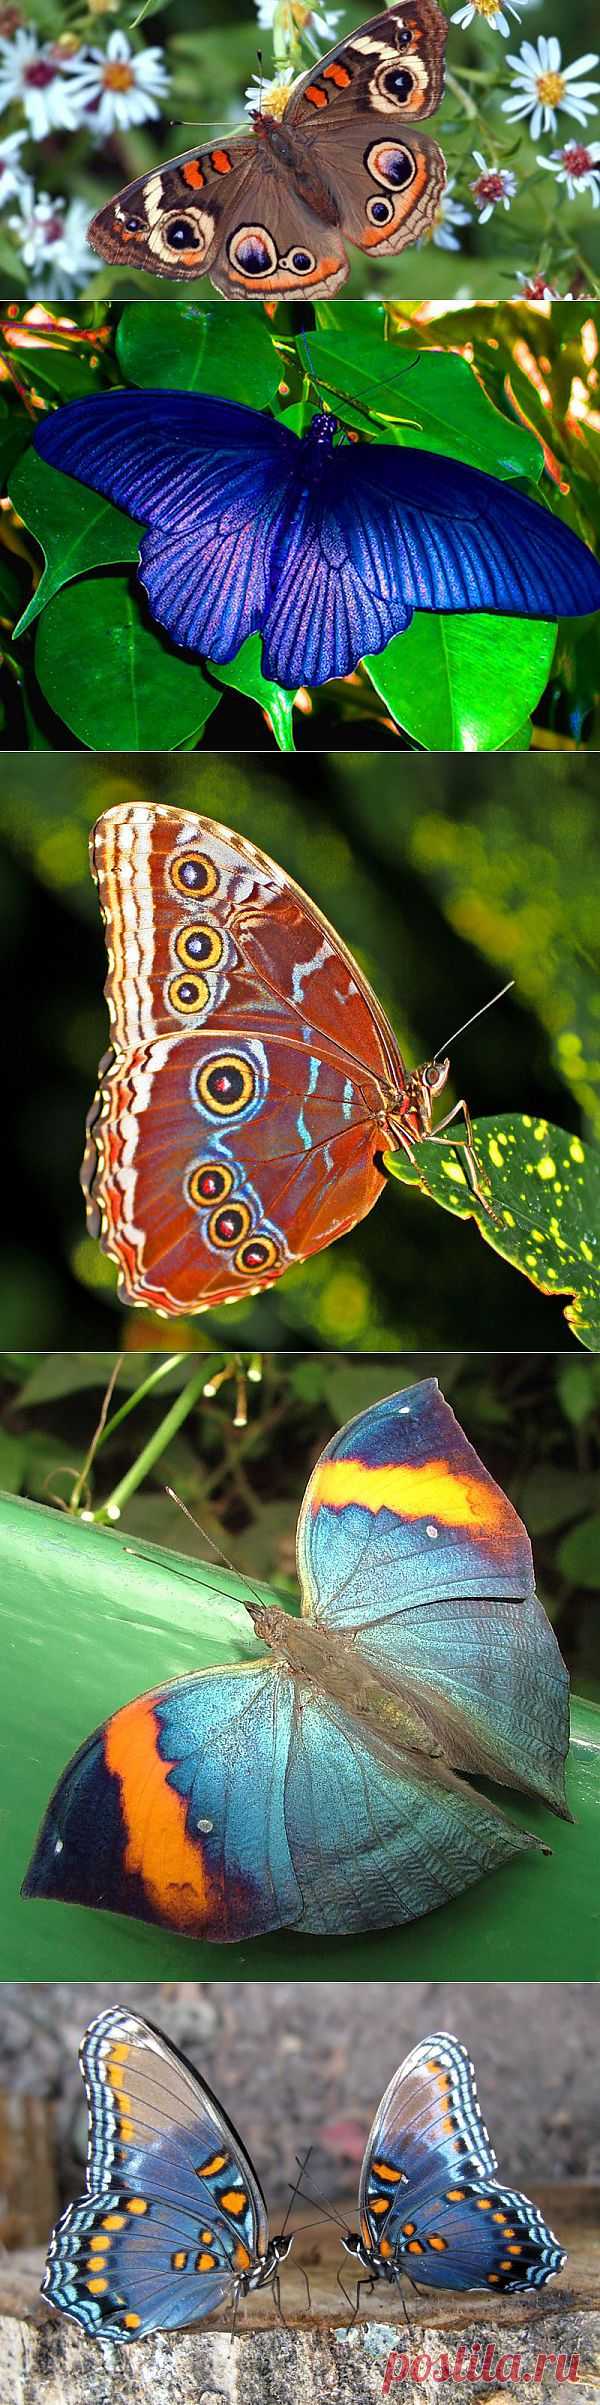 Фотографии красивых бабочек | Newpix.ru - позитивный интернет-журнал